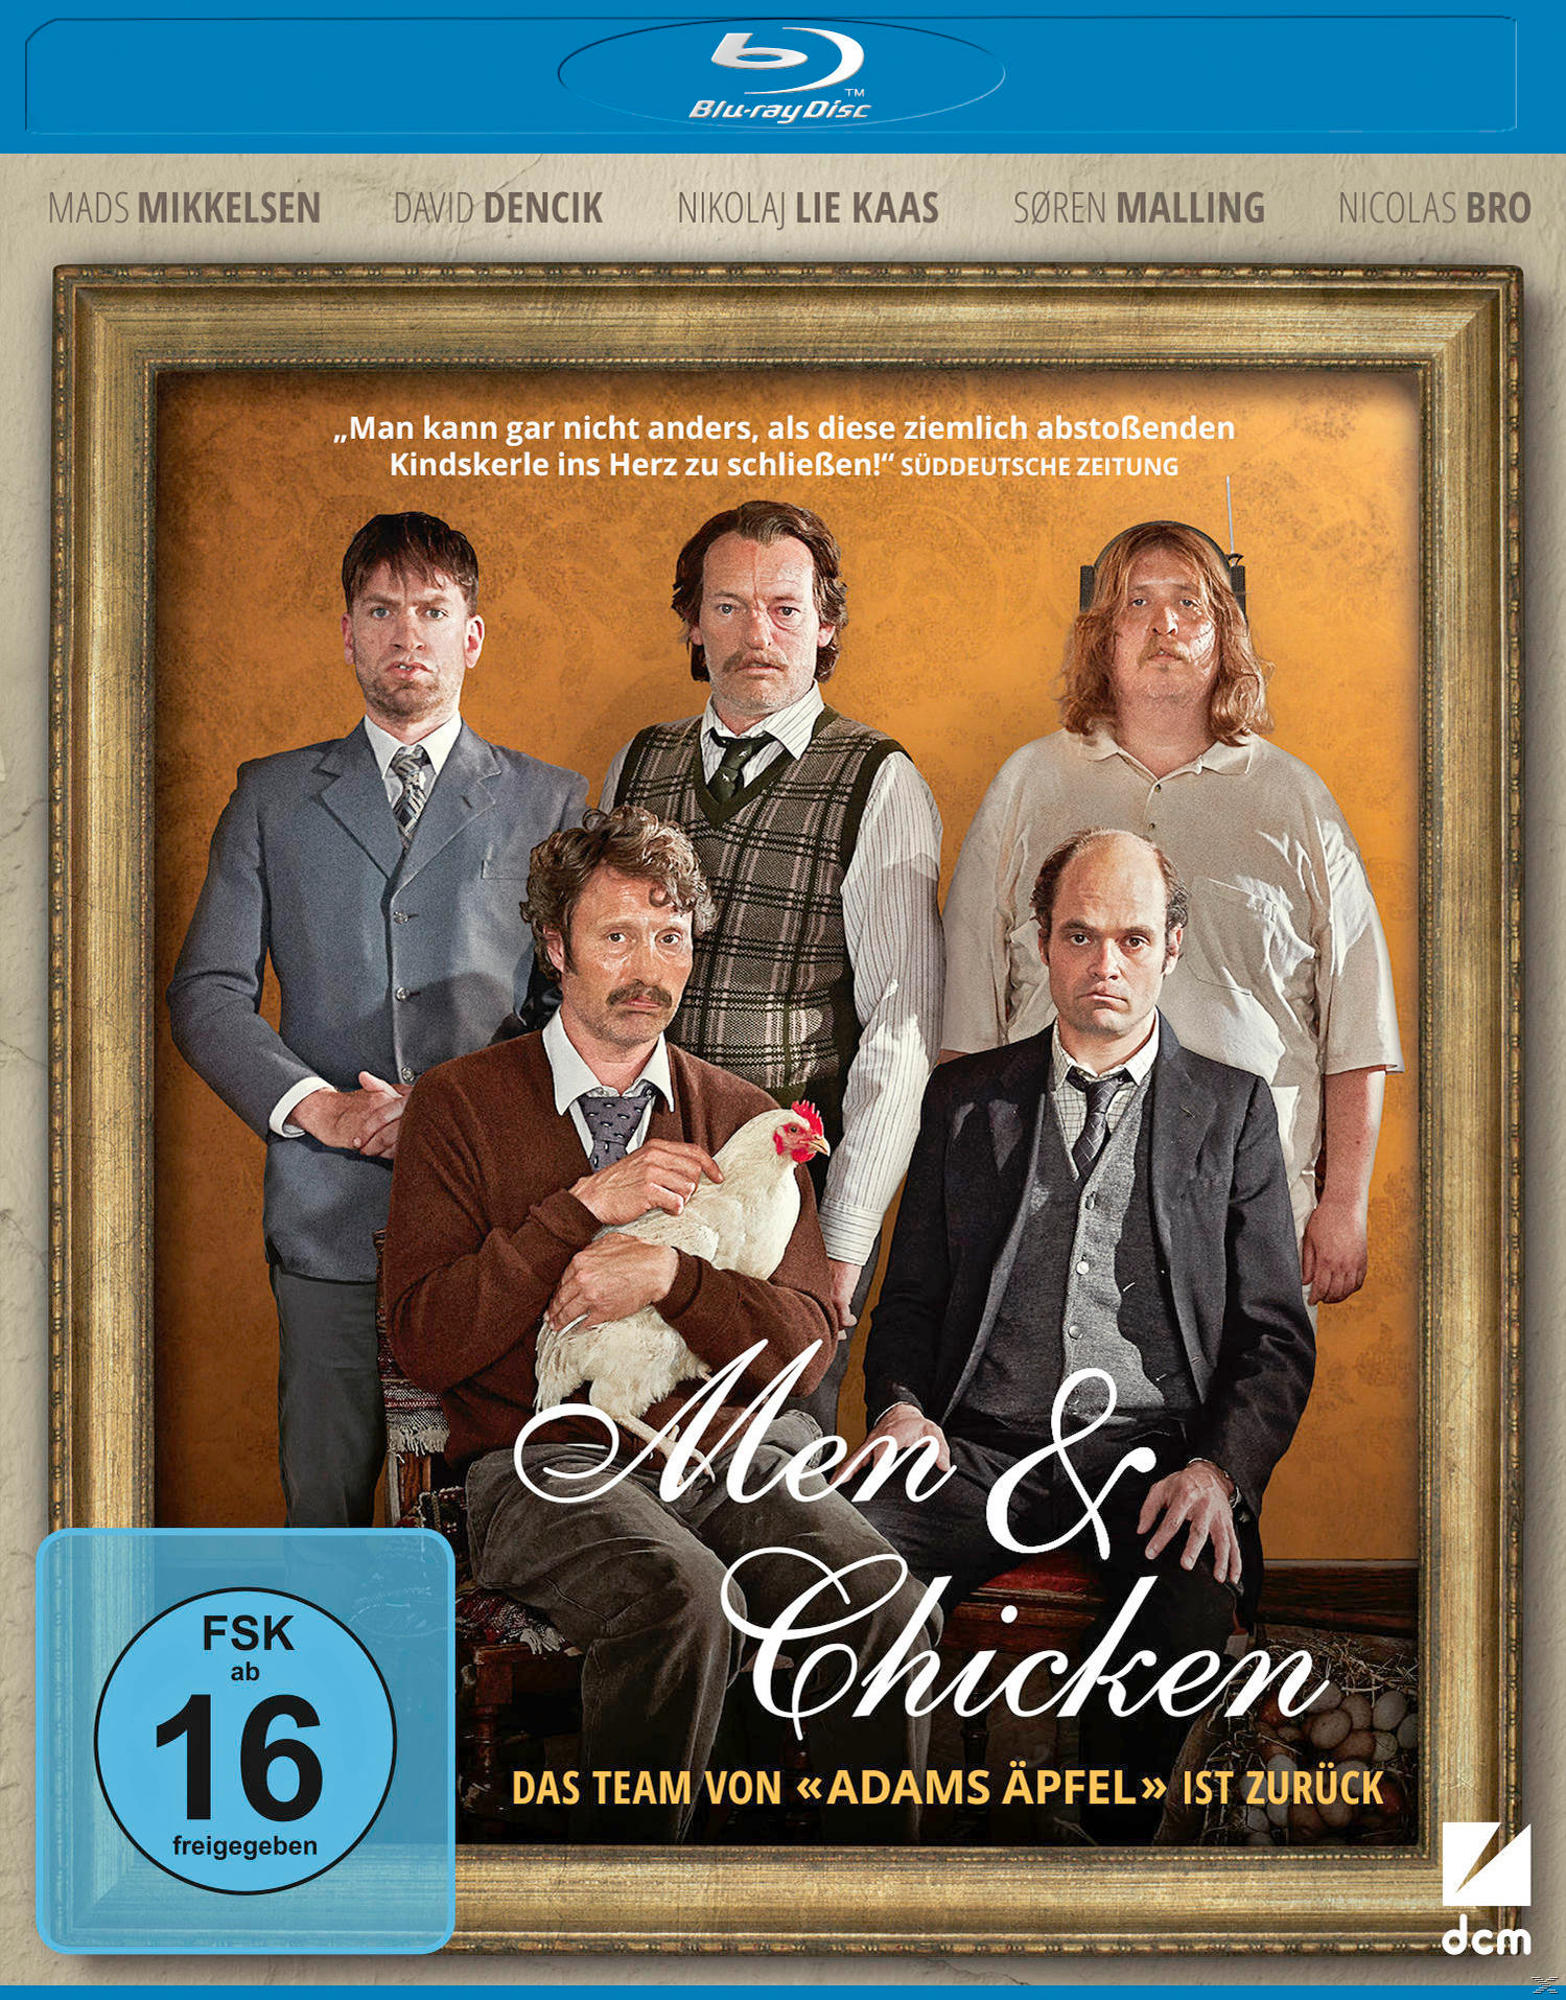 Men & Blu-ray Chicken